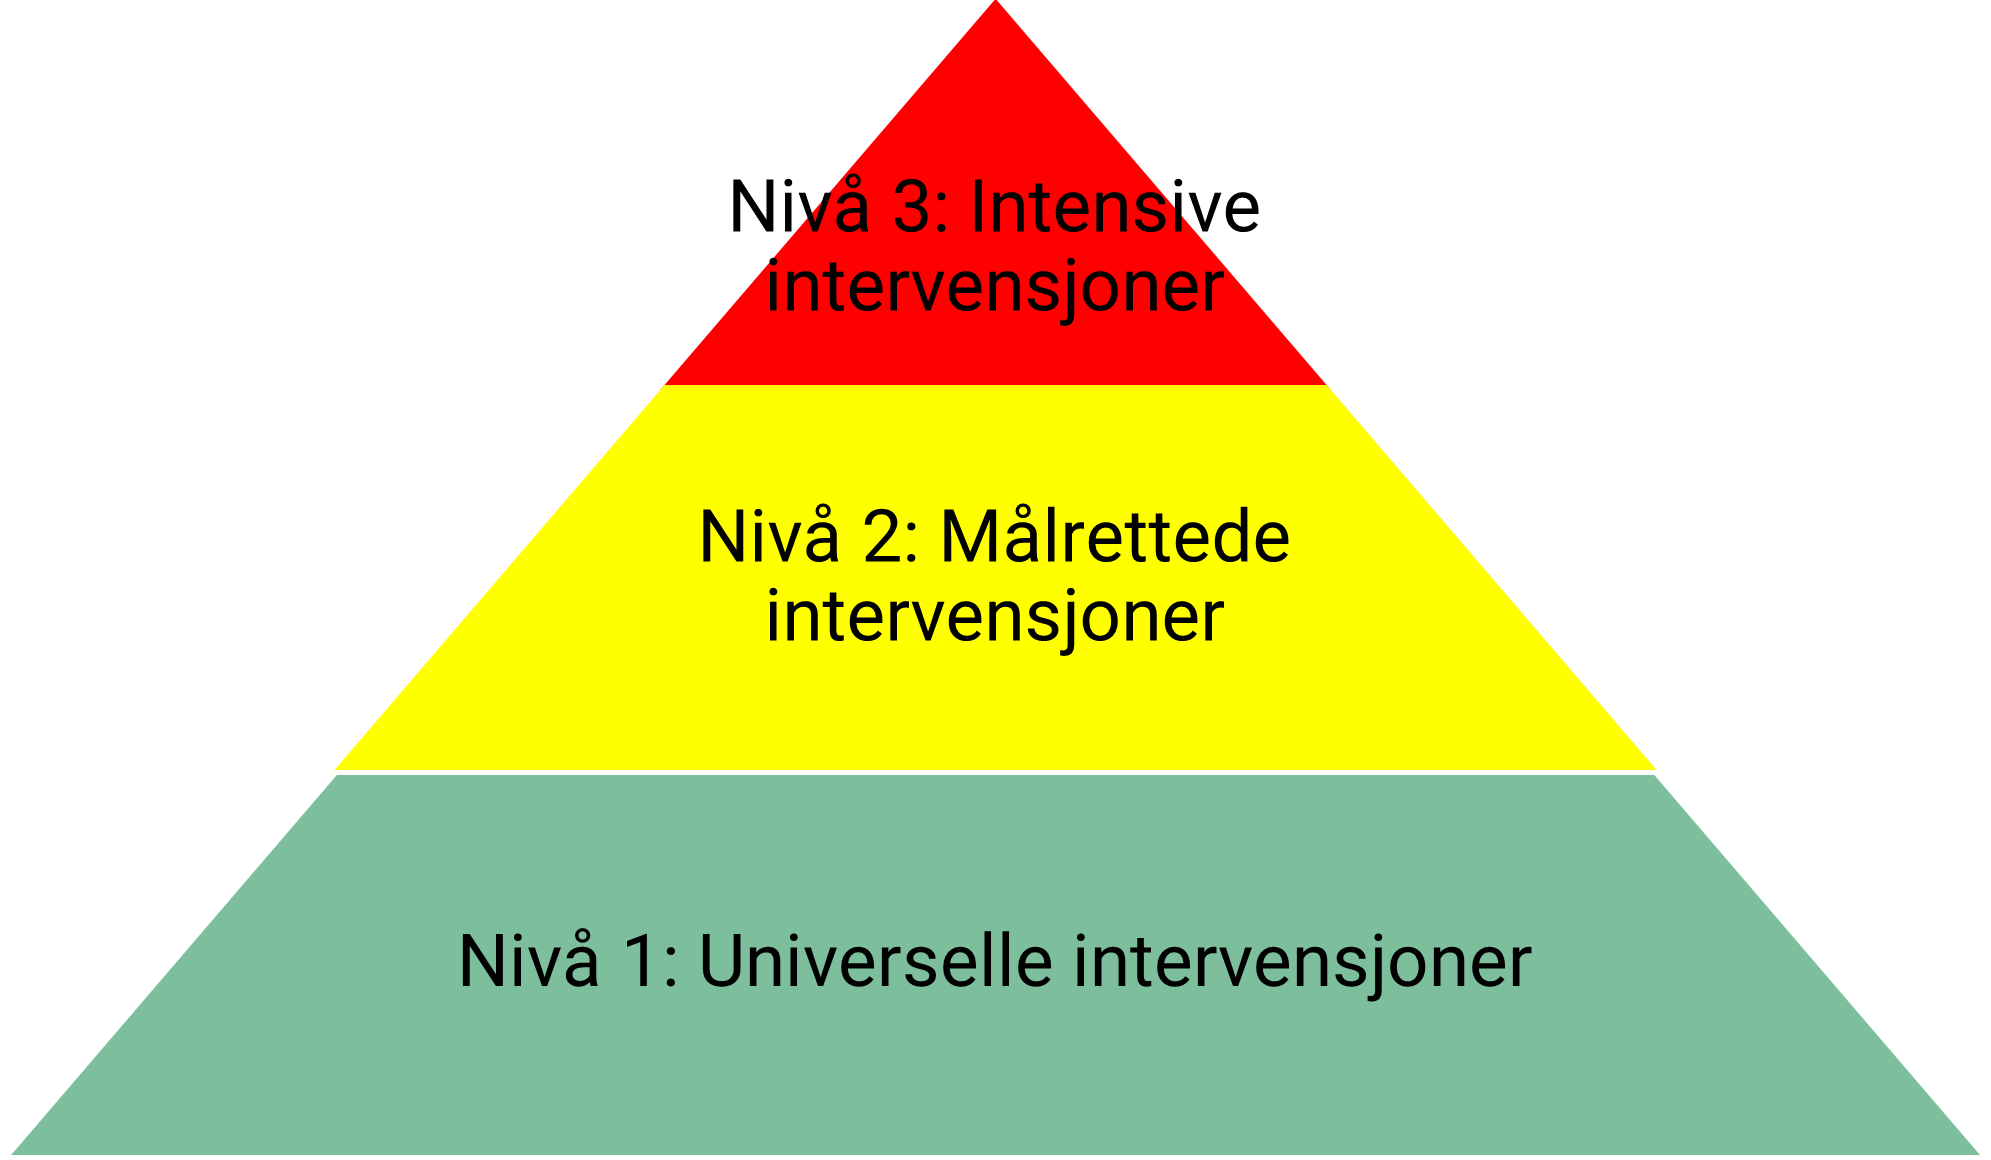 Pyramide med tre nivå. Nederste nivå er grønt, med teksten "Nivå 1: Universelle intervensjoner". Nivå et i midten er gult, med teksten "Nivå 2: Målrettede intervensjoner". Øverste nivå er rødt, med teksten "Nivå 3: Intensive intervensjoner".